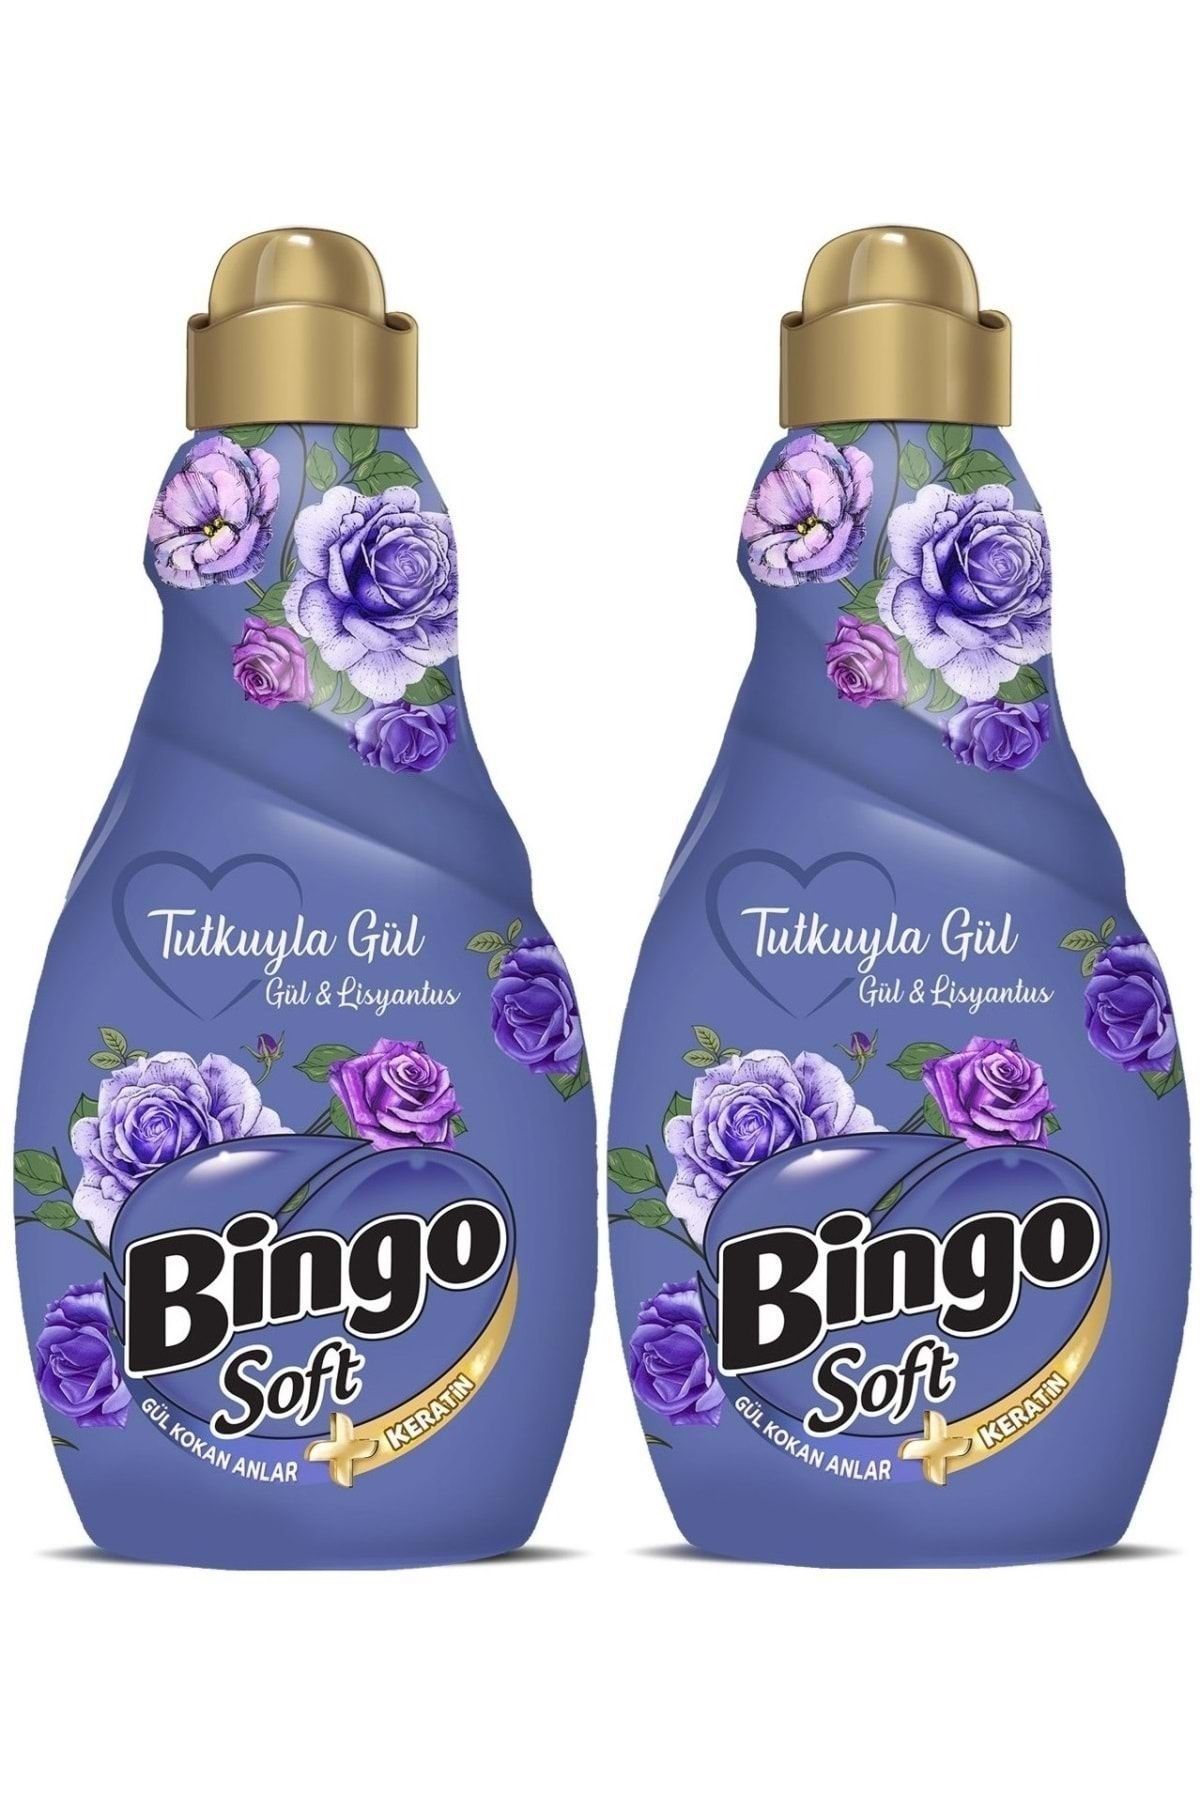 Bingo Soft Çamaşır Yumuşatıcı Konsantre 1440ml Tutkuyla Gül (gül & Lisyantus) (2 Li Set)